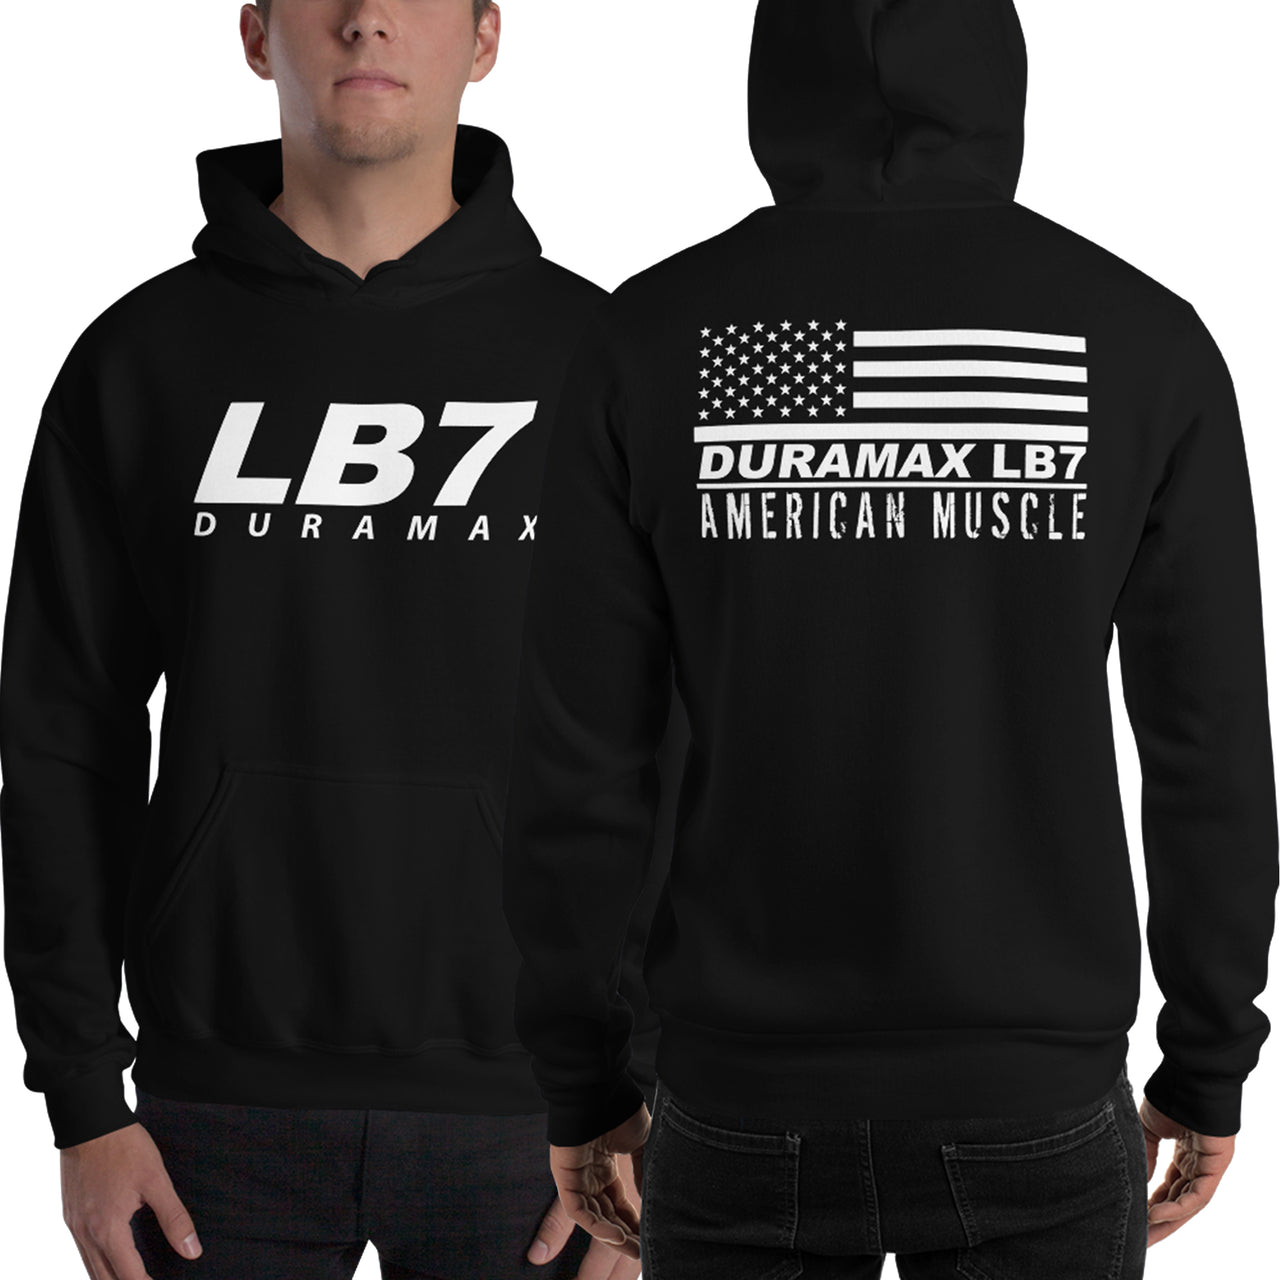 LB7 Duramax American Flag Hoodie modeled in black